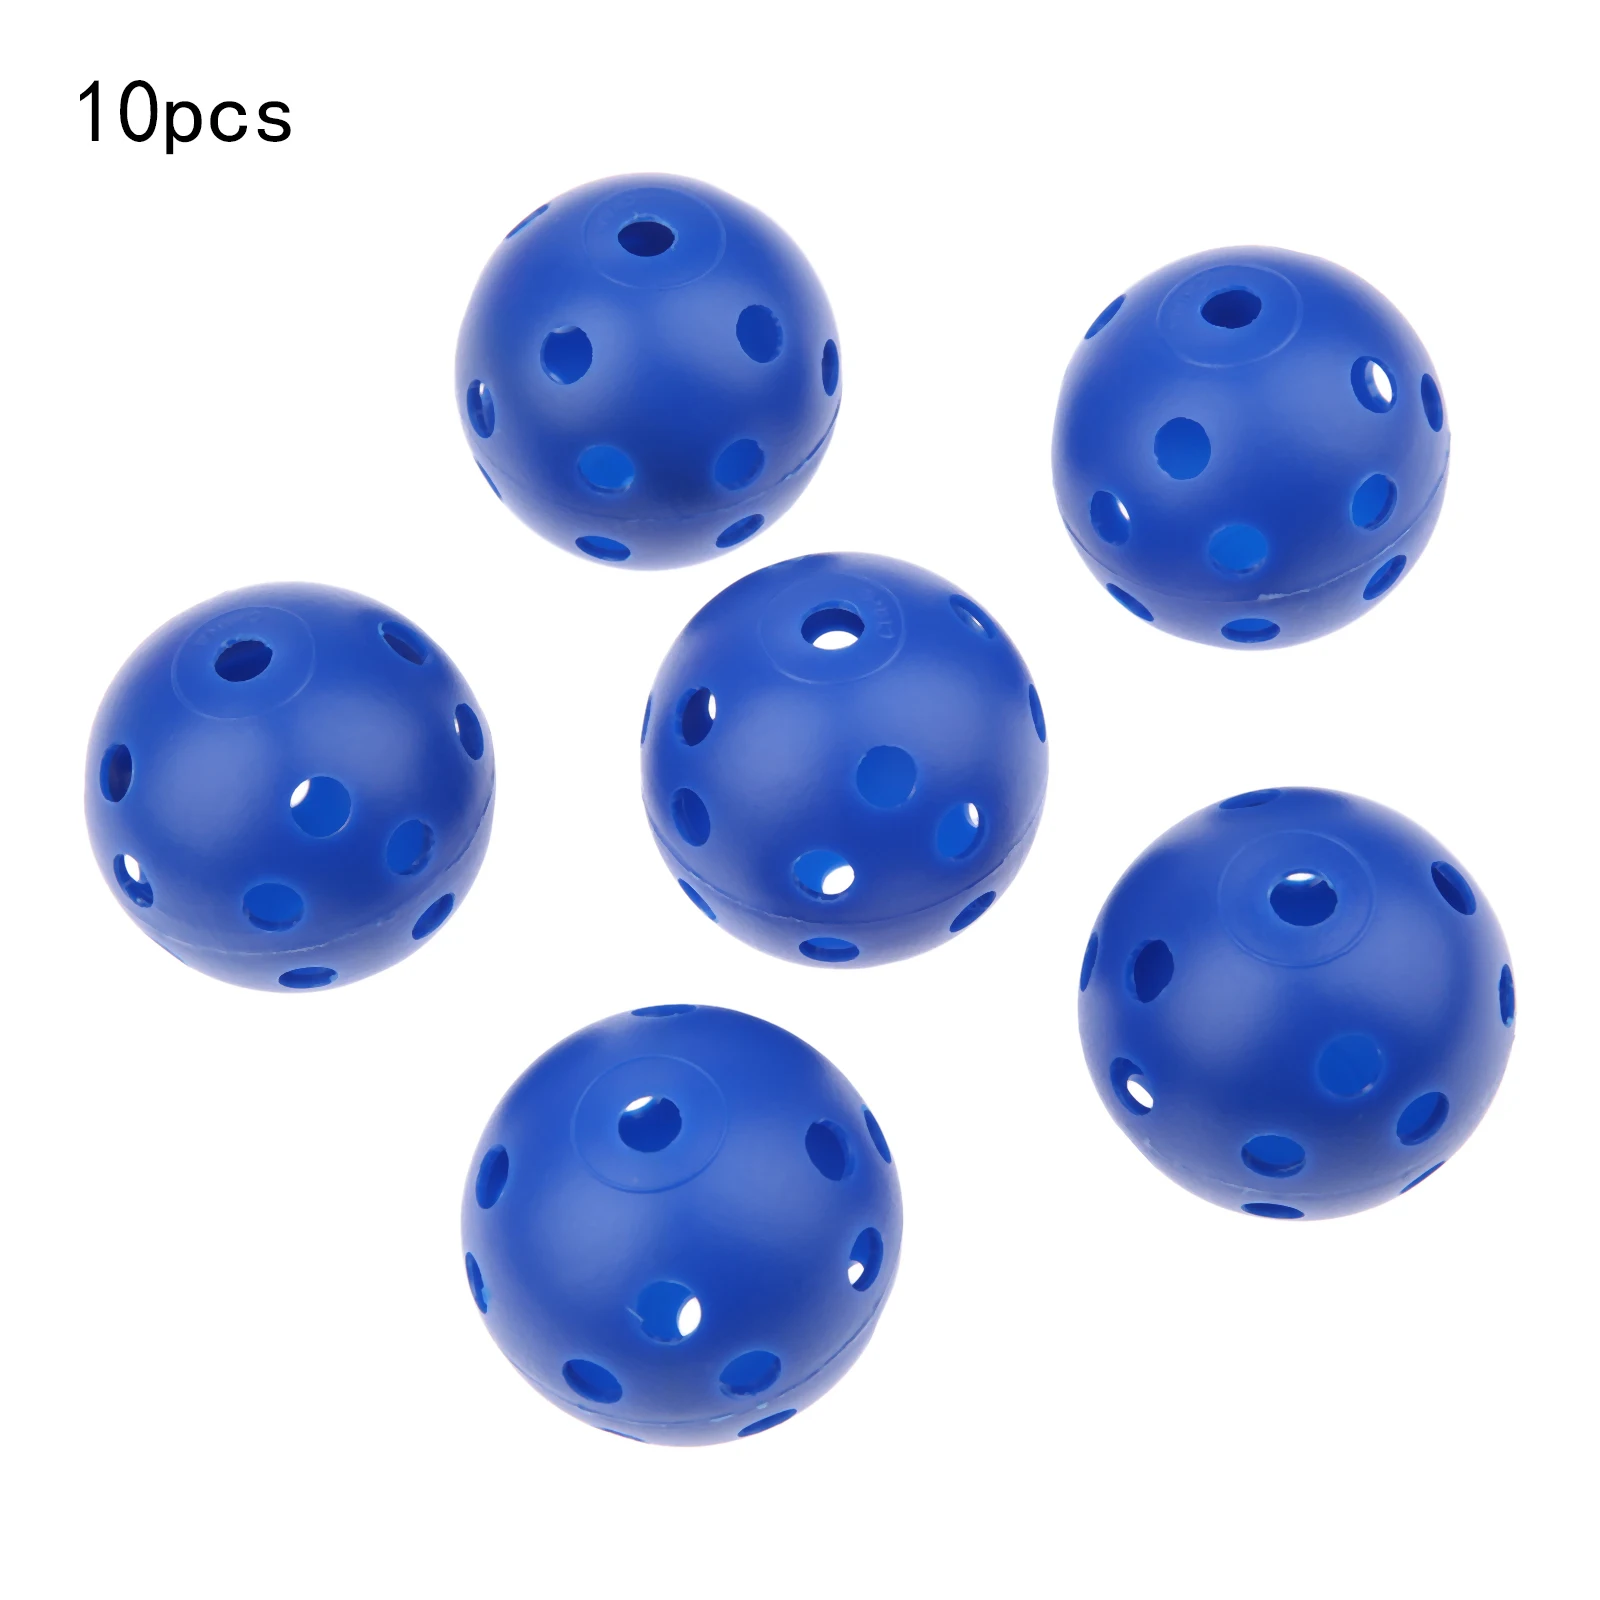 SURIEEN 10 шт Пластиковые Мячи для гольфа 41 мм воздушный поток полые с отверстием мячи для гольфа для внутреннего спорта на открытом воздухе тренировочные мячи для гольфа - Цвет: Blue